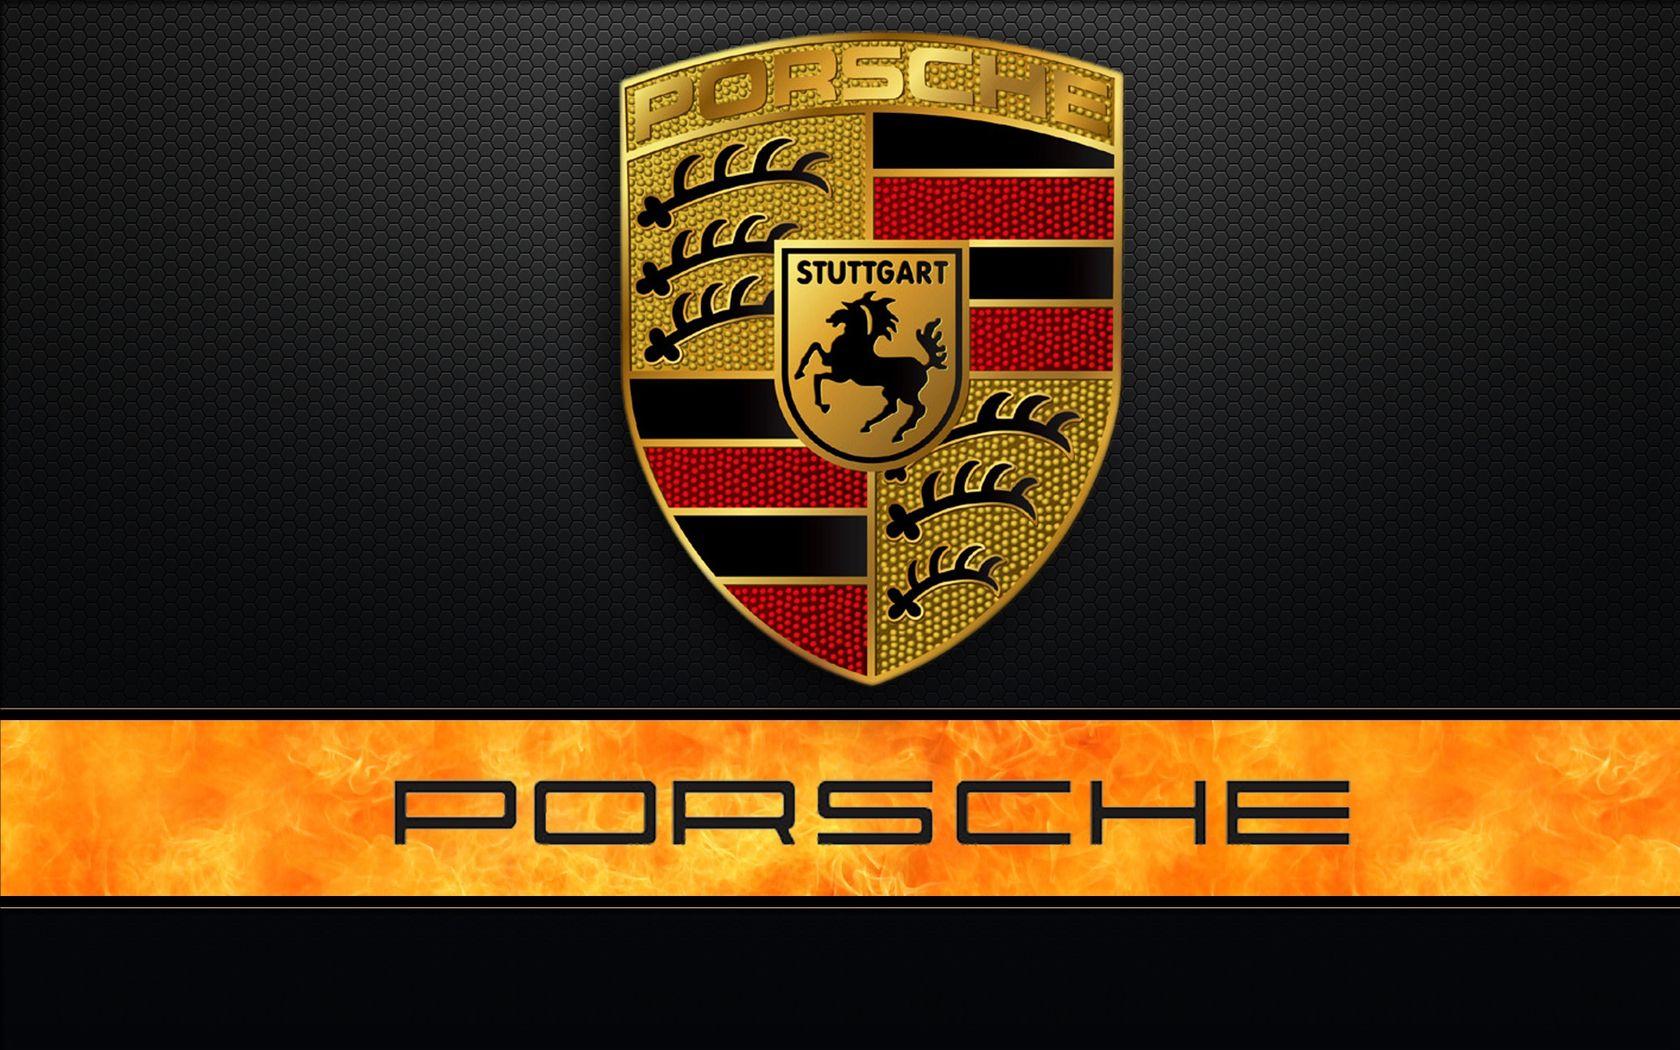 porsche logo wallpaper hd